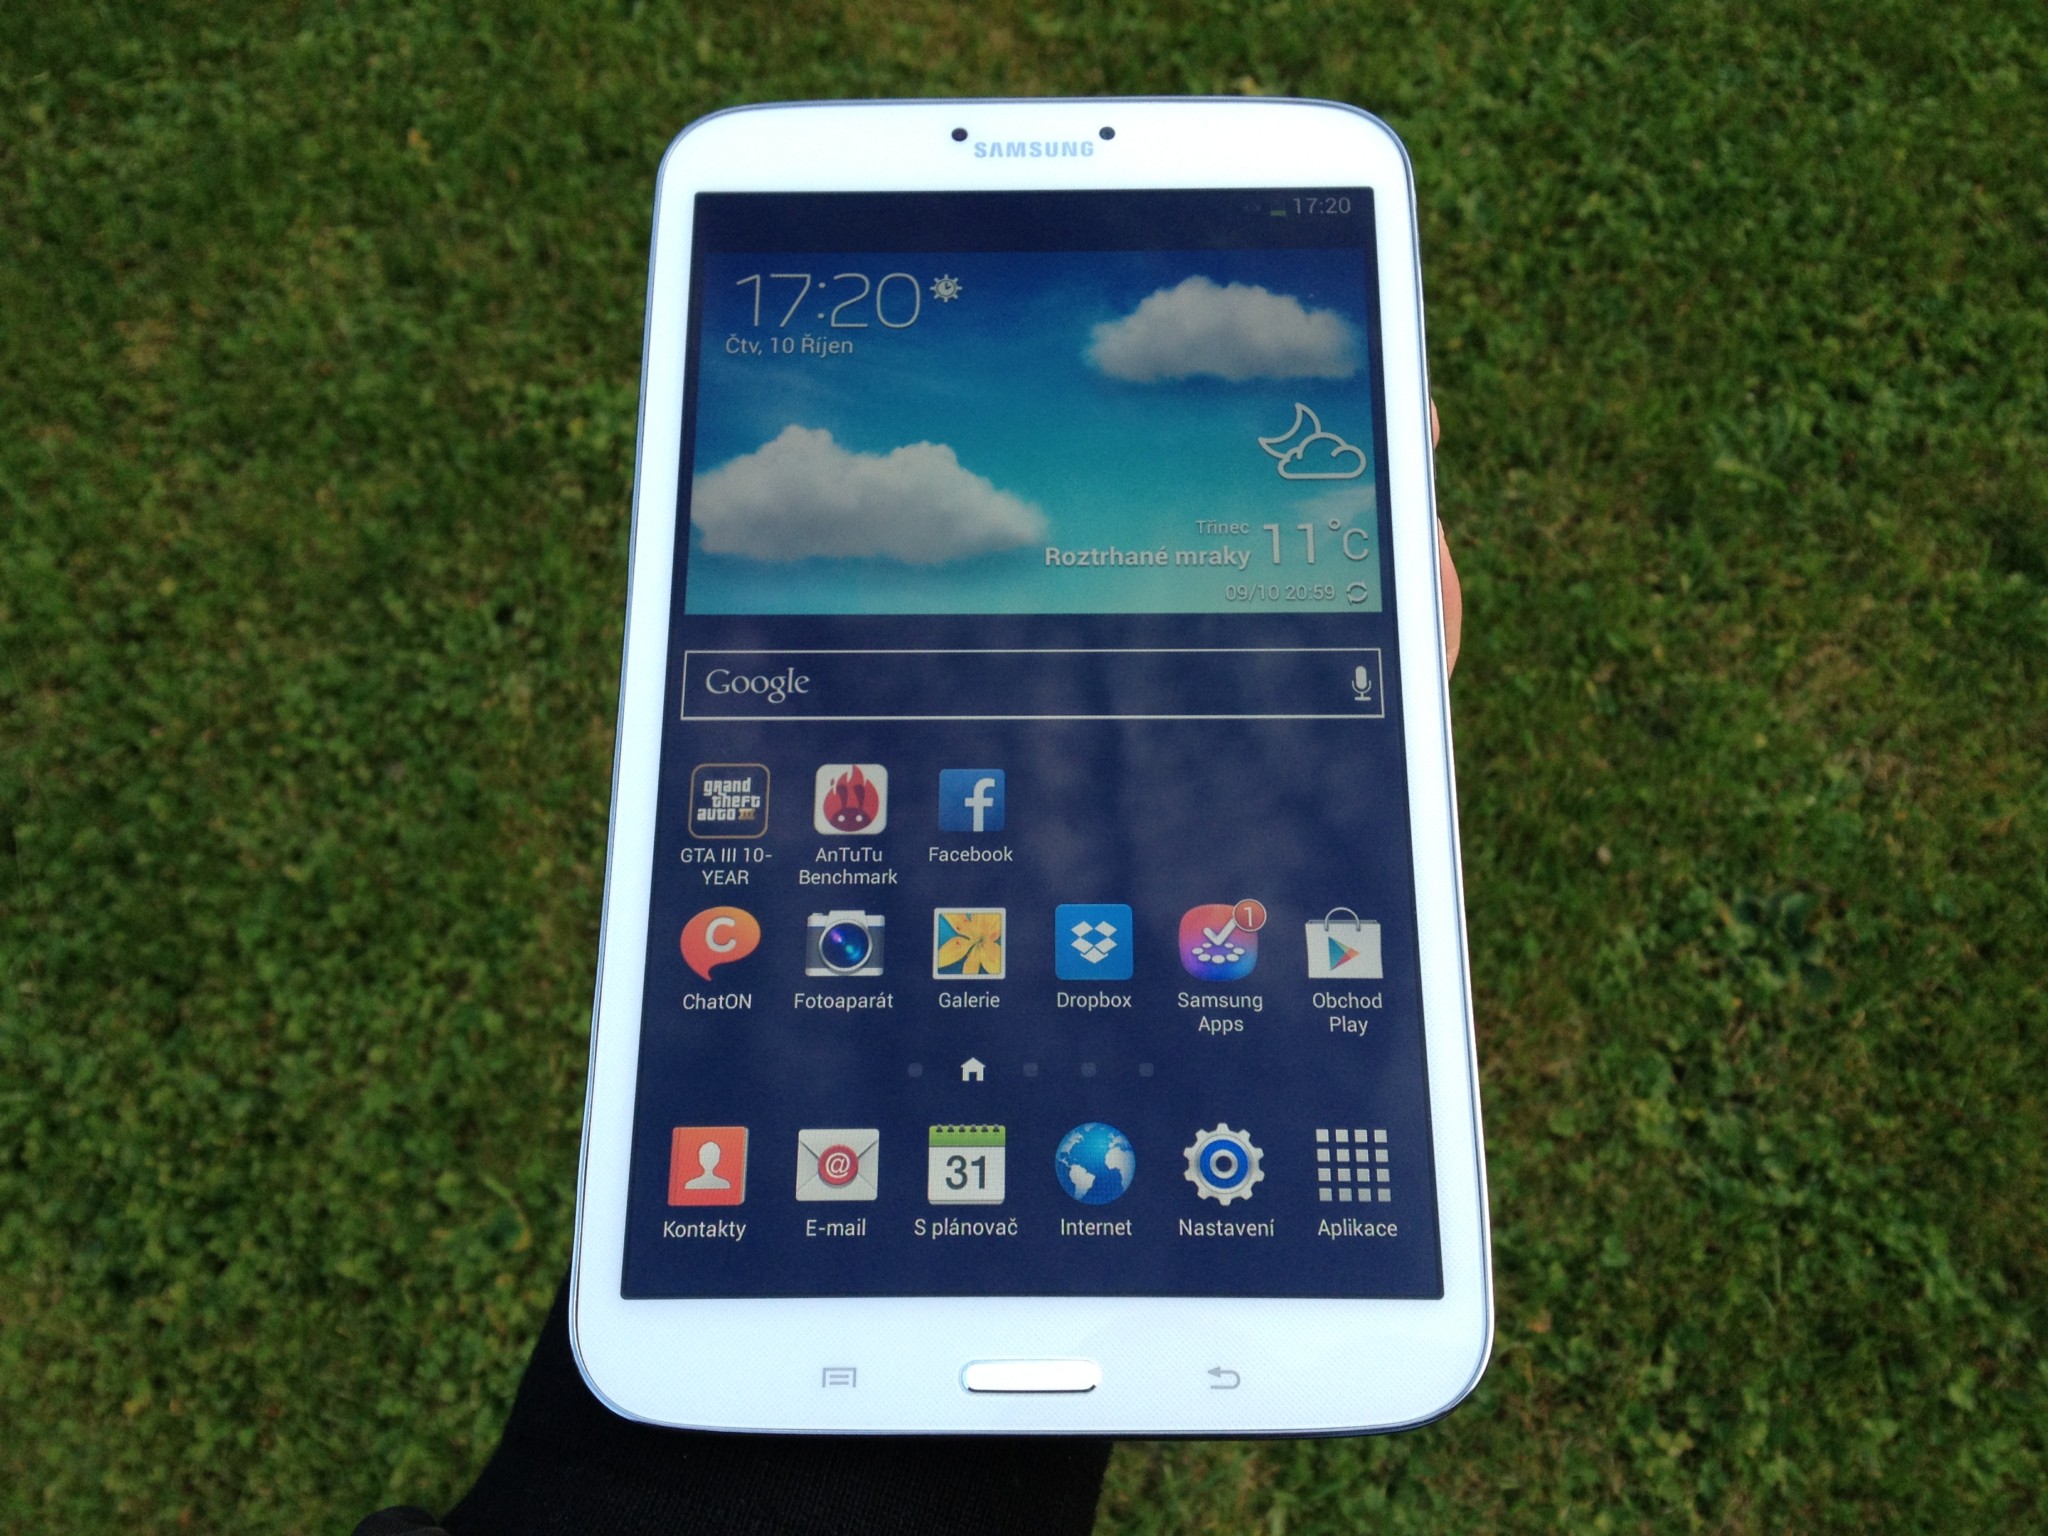 Samsung Galaxy TAB3 8.0 Wi-Fi – Ten nejoblíbenější z trojice představených [recenze]